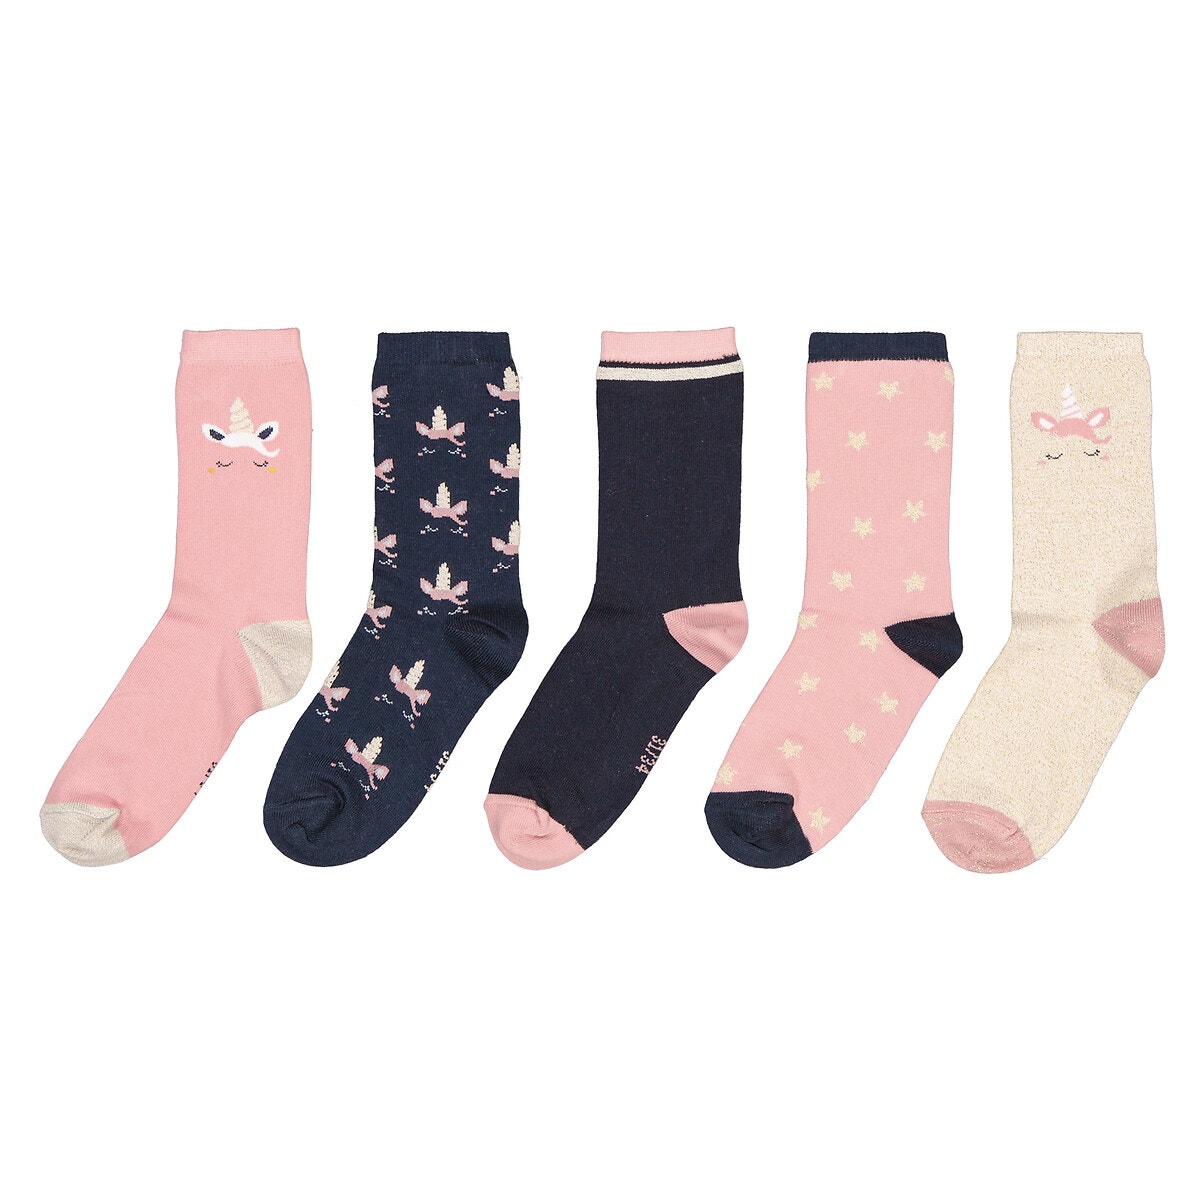 Μόδα > Παιδικά > Κορίτσι > Κάλτσες, καλσόν > Κάλτσες Σετ 5 ζευγάρια κάλτσες με σχέδιο μονόκερο